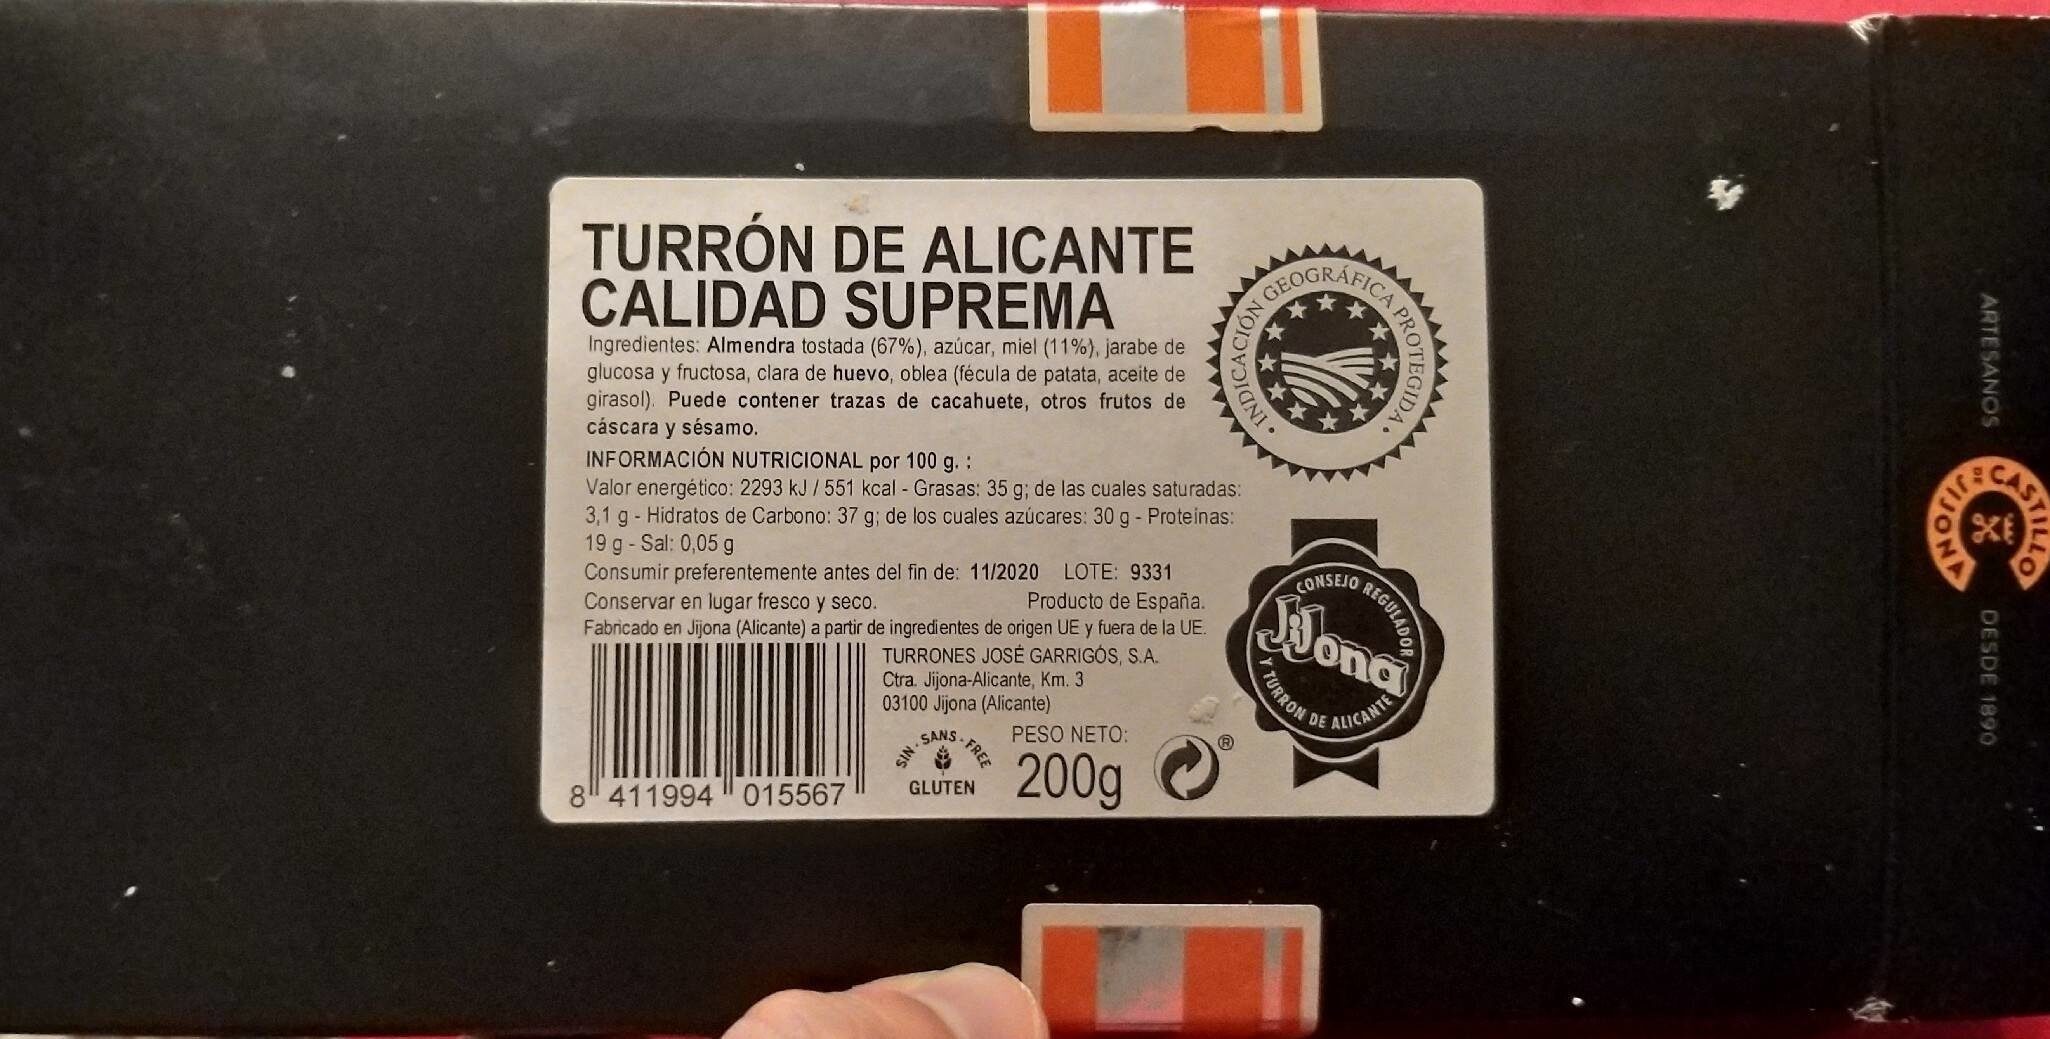 Turrón de Alicante Calidad Suprema - Product - es